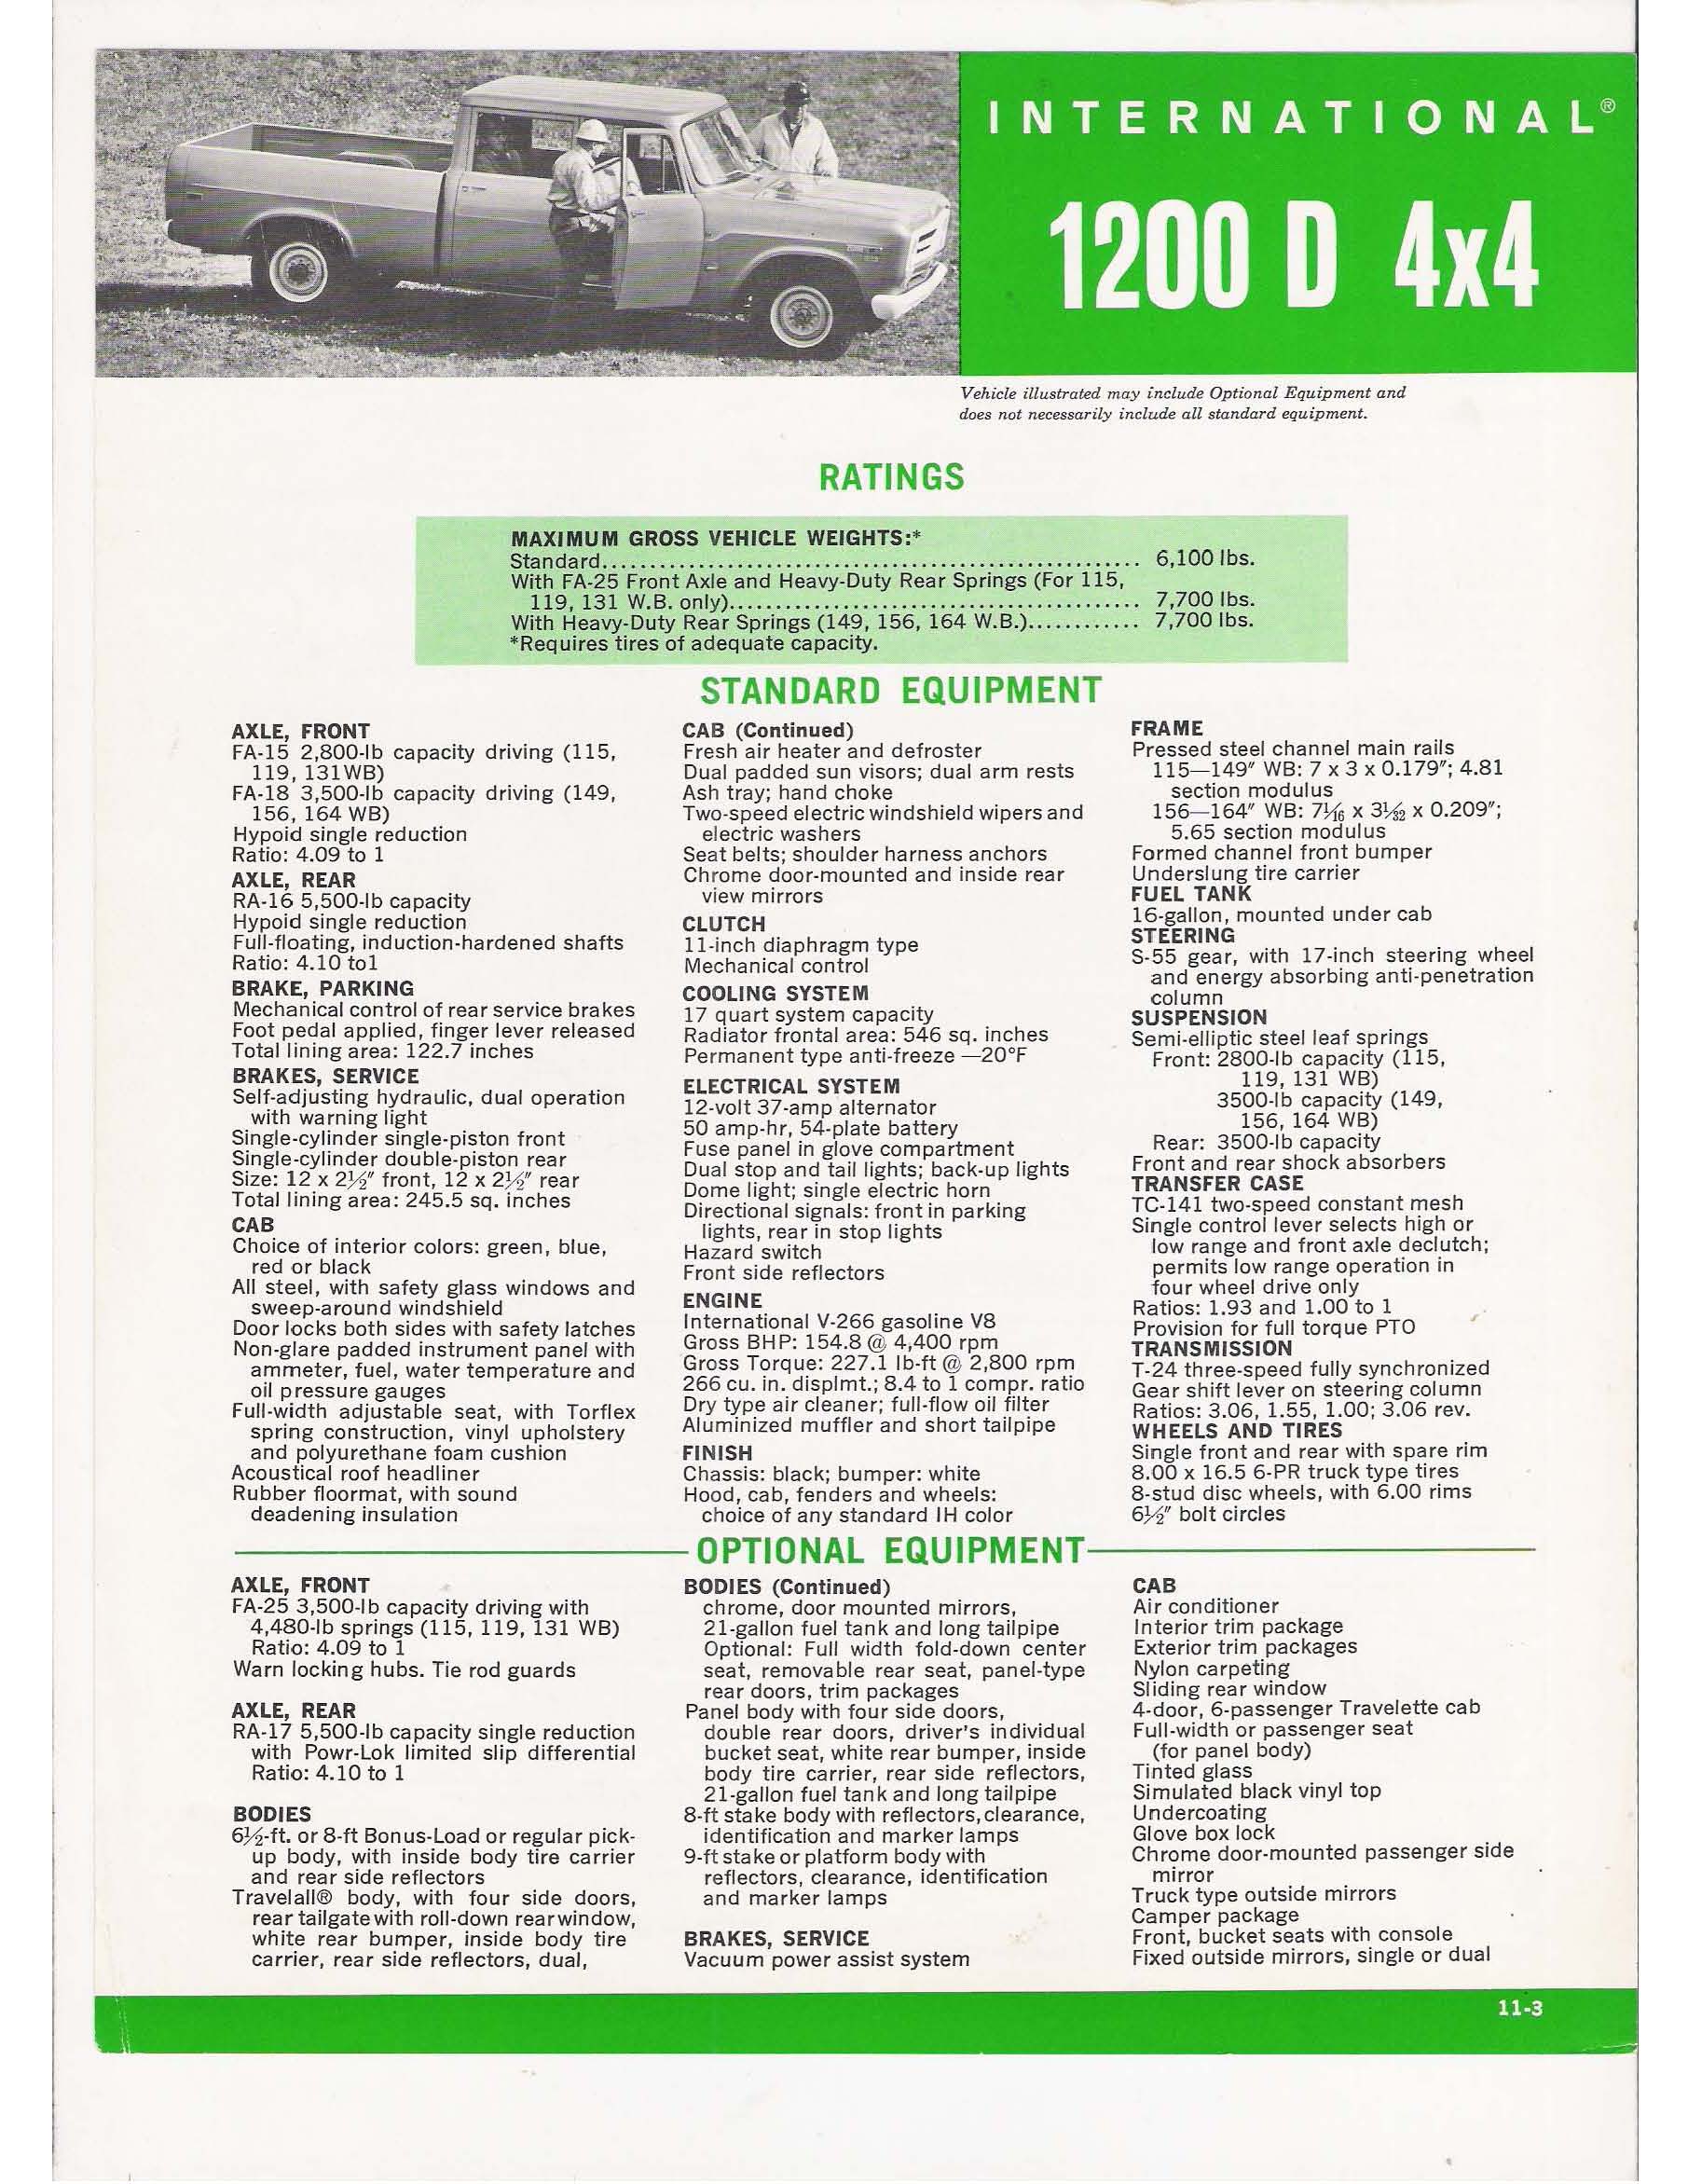 1969 International 1200D 4X4 Folder